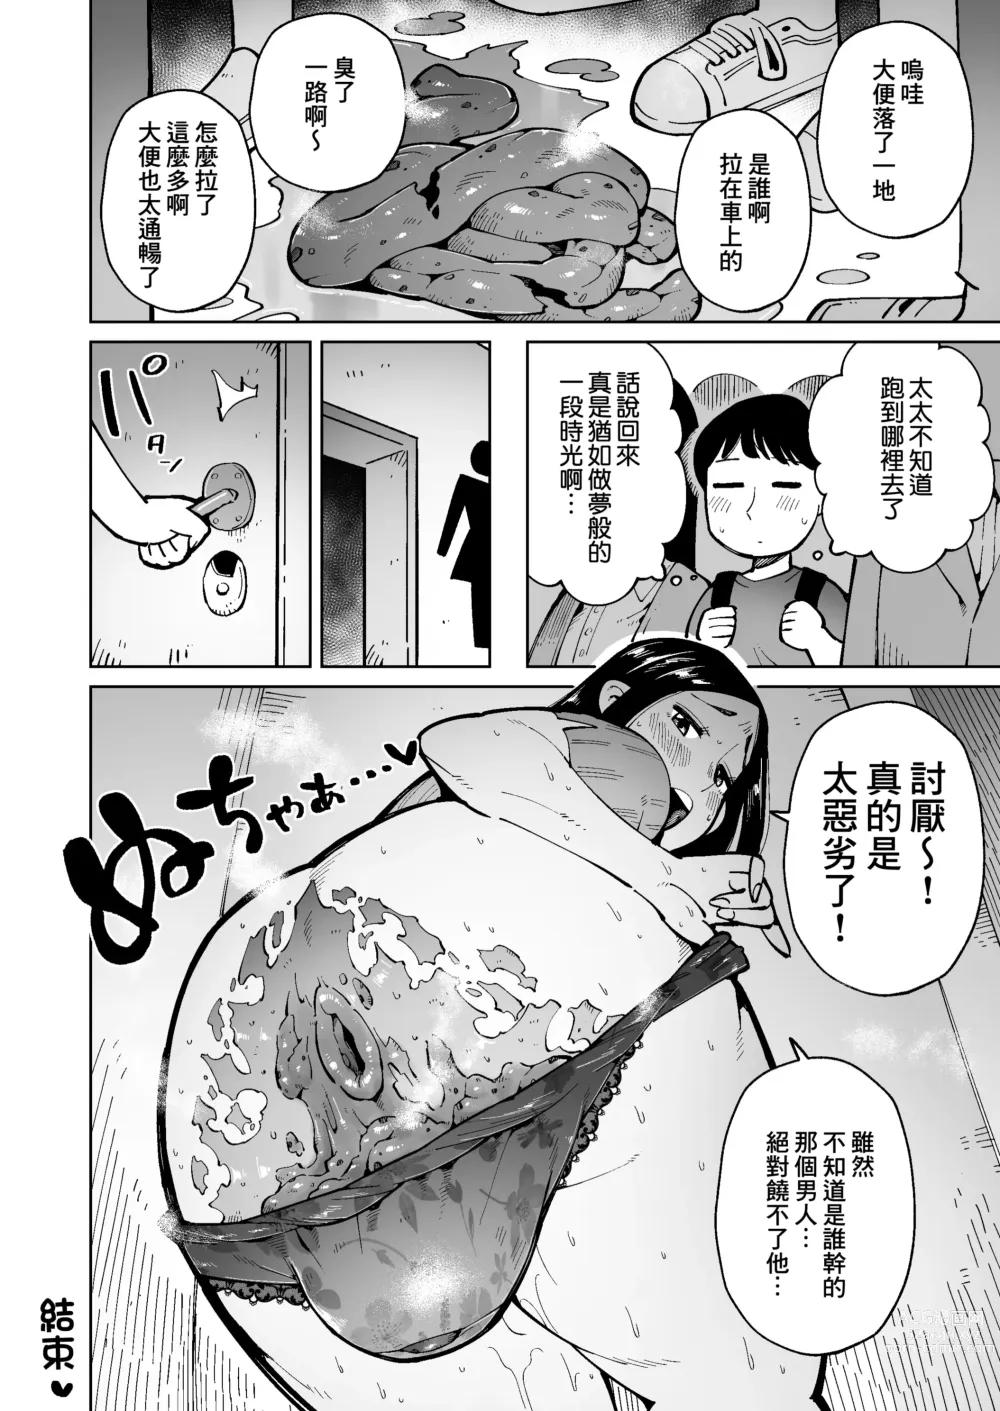 Page 19 of doujinshi 在電車上對大屁股太太進行癡漢行為時弄到大便失禁了所以就這麼操下去了。